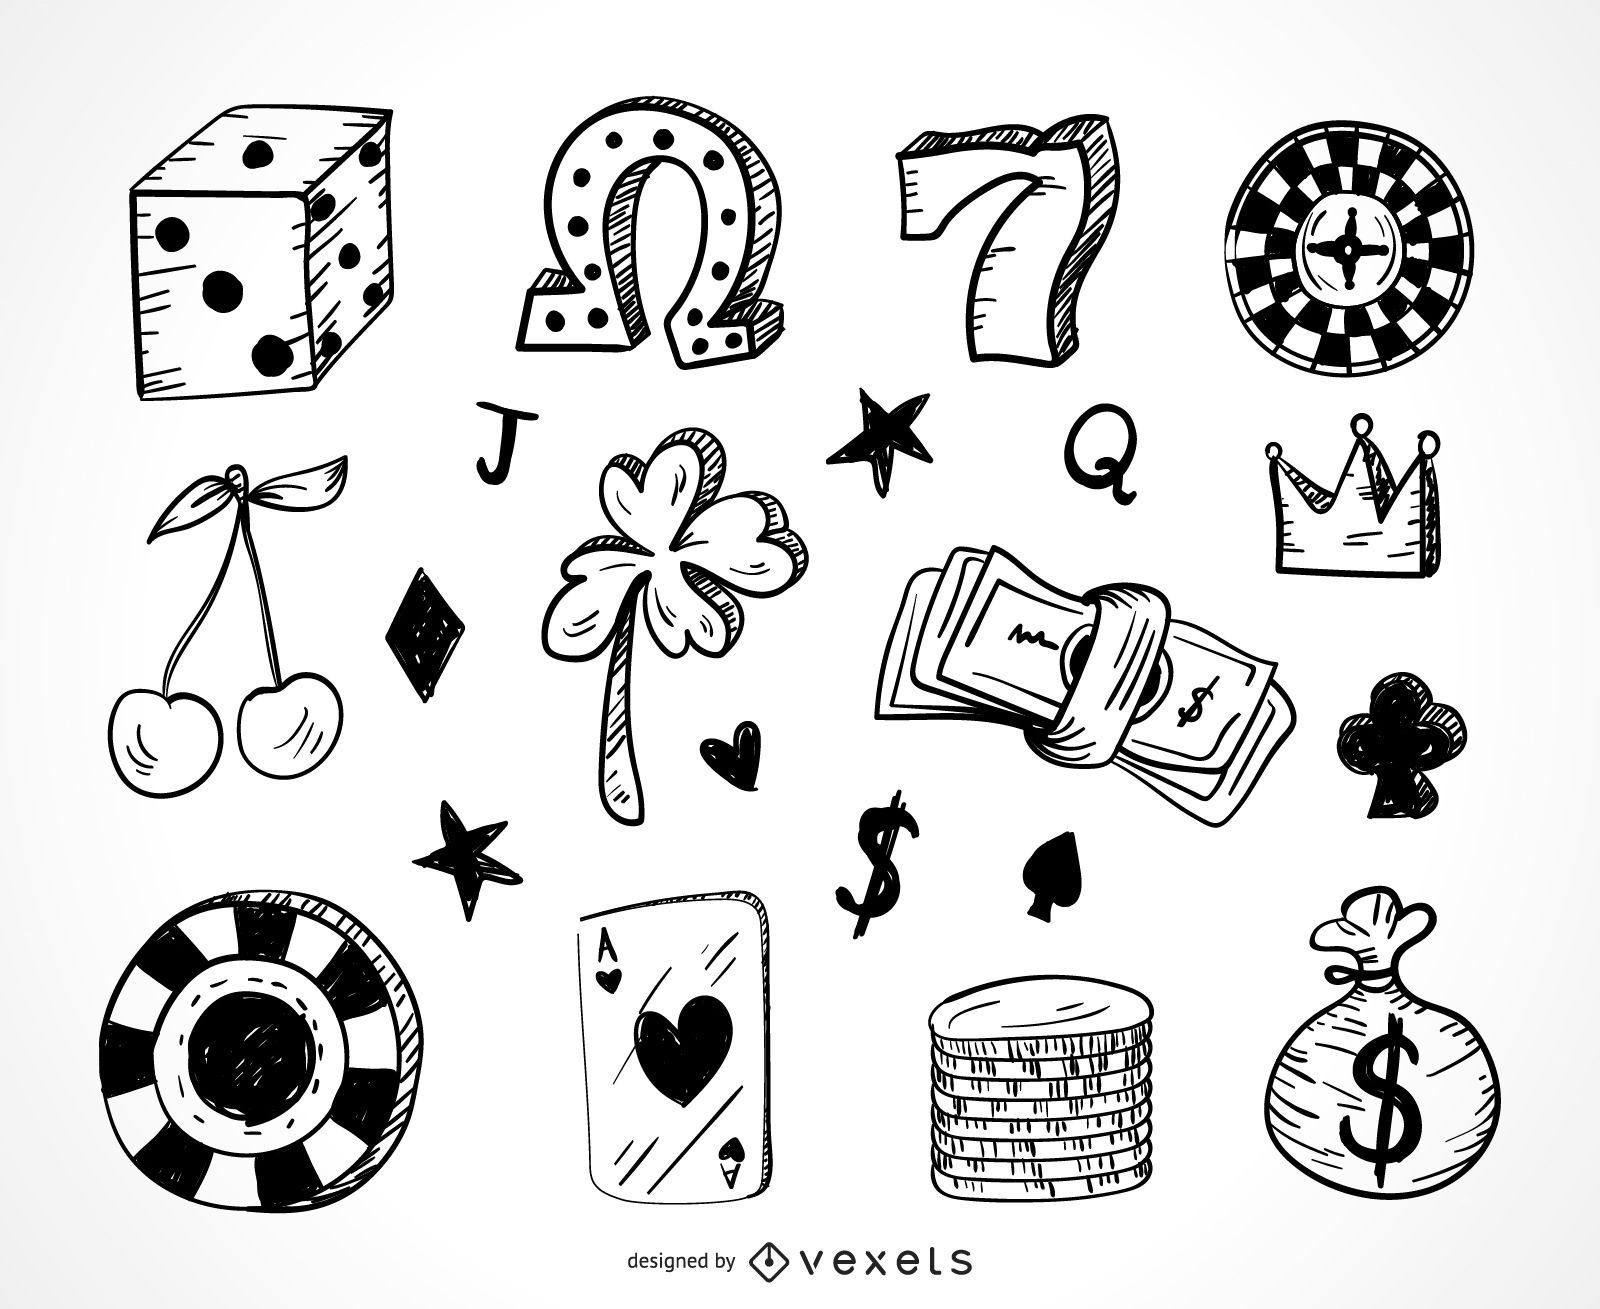 Ilustração vetorial doodle desenhado de mão de um dado de cassino desenho  de desenho símbolo de jogo de azar